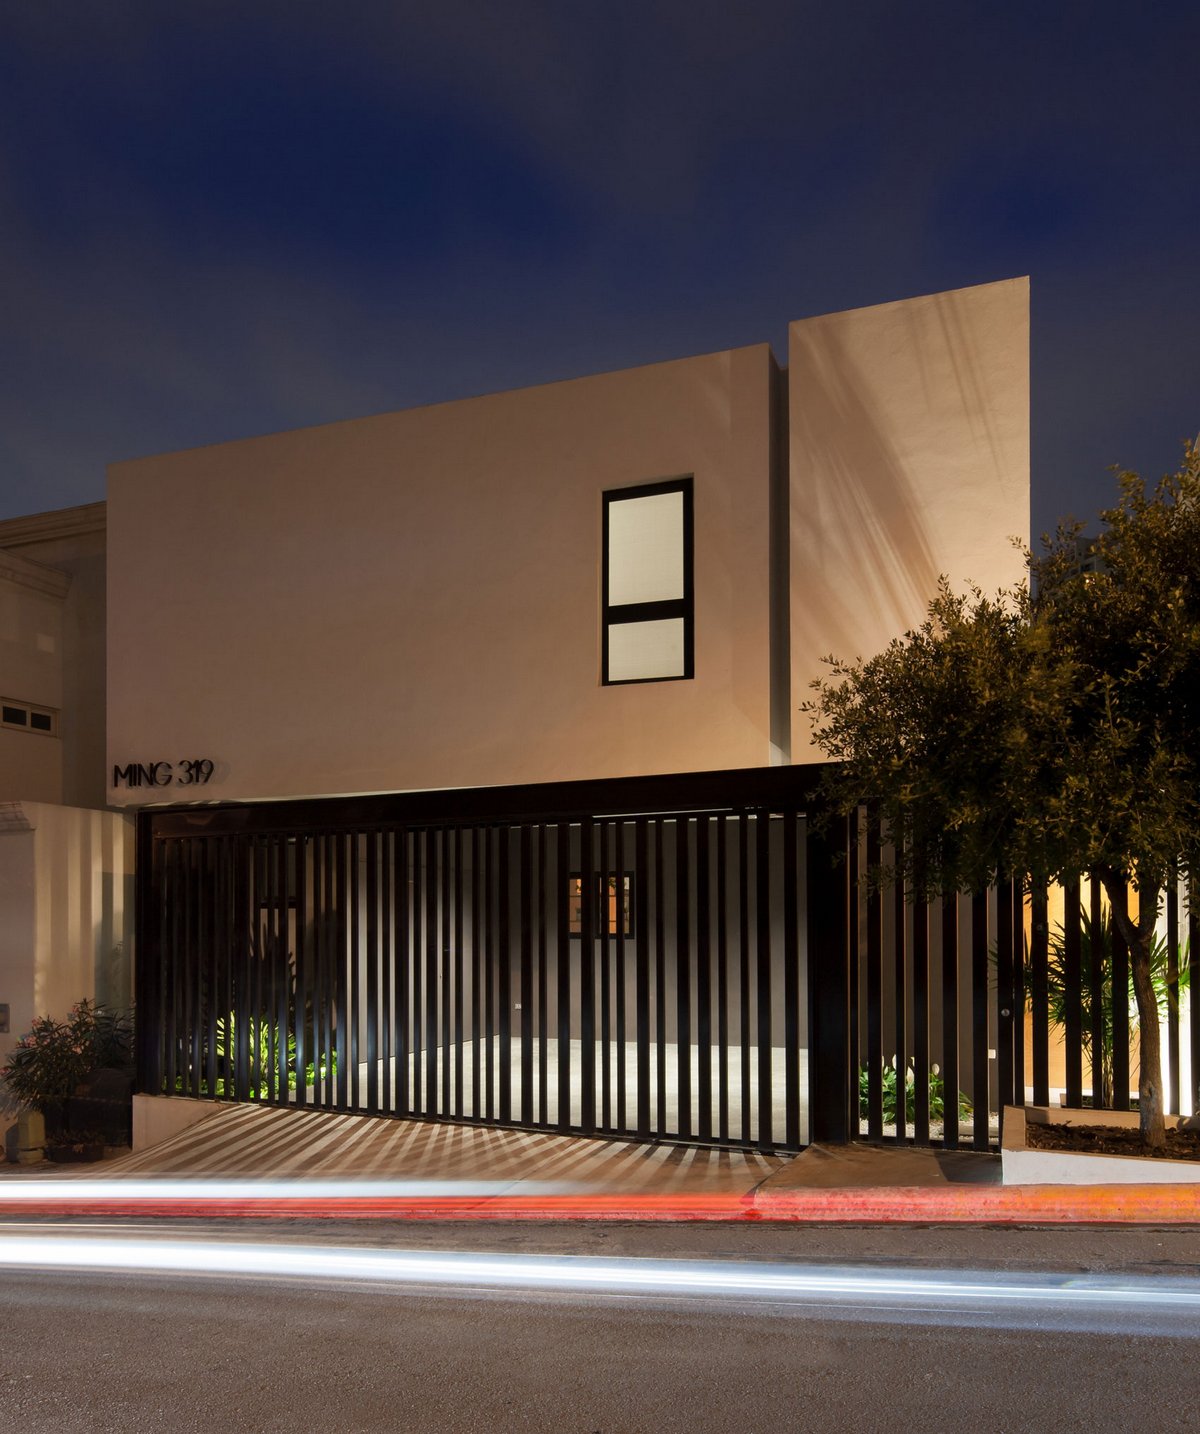 LGZ Taller de Arquitectura, частный дом в Мексике, дома в Монтеррей, частный дом на маленьком участке земли, план дома, фотографии частных домов